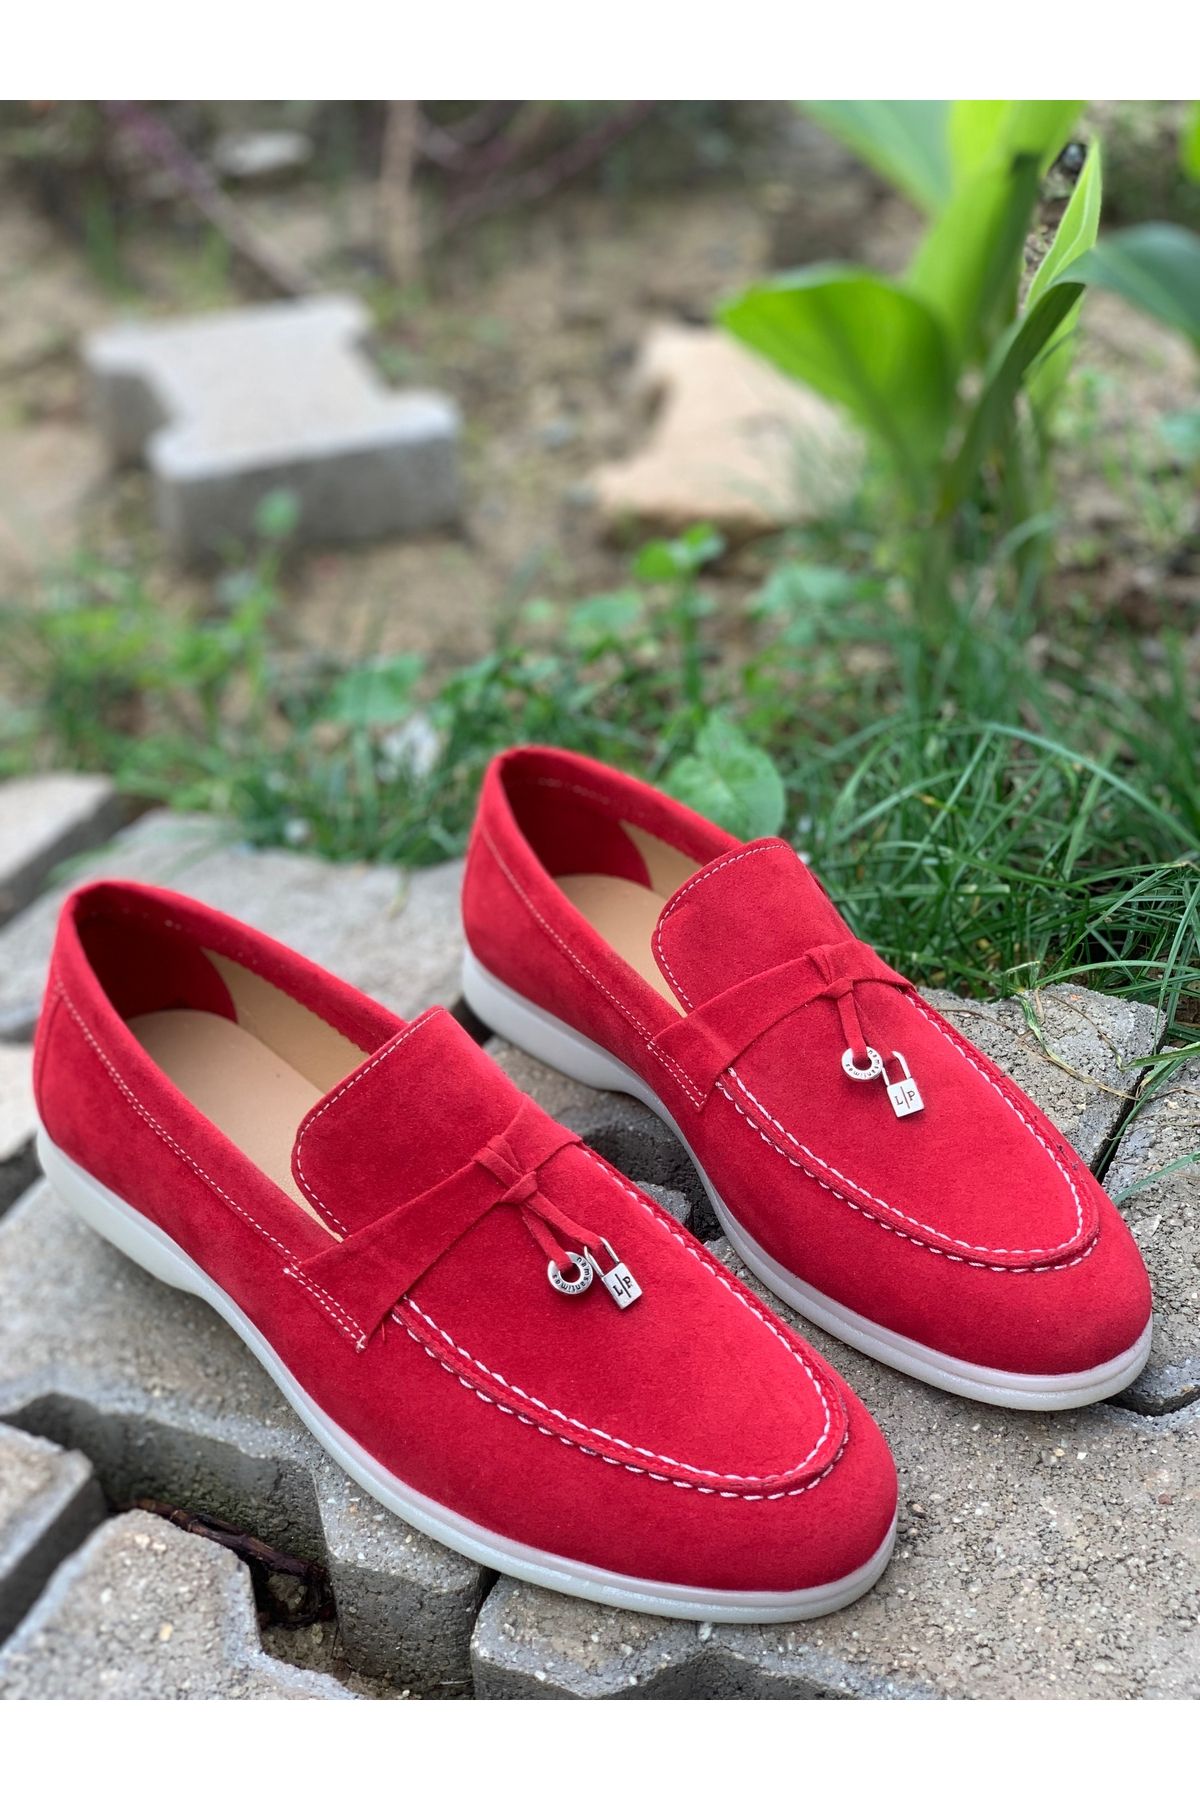 Treyler Ayakkabı Erkek Kırmızı Süet Loafer Ayakkabı,Klasik Ayakkabı,Yazlık Ayakkabı